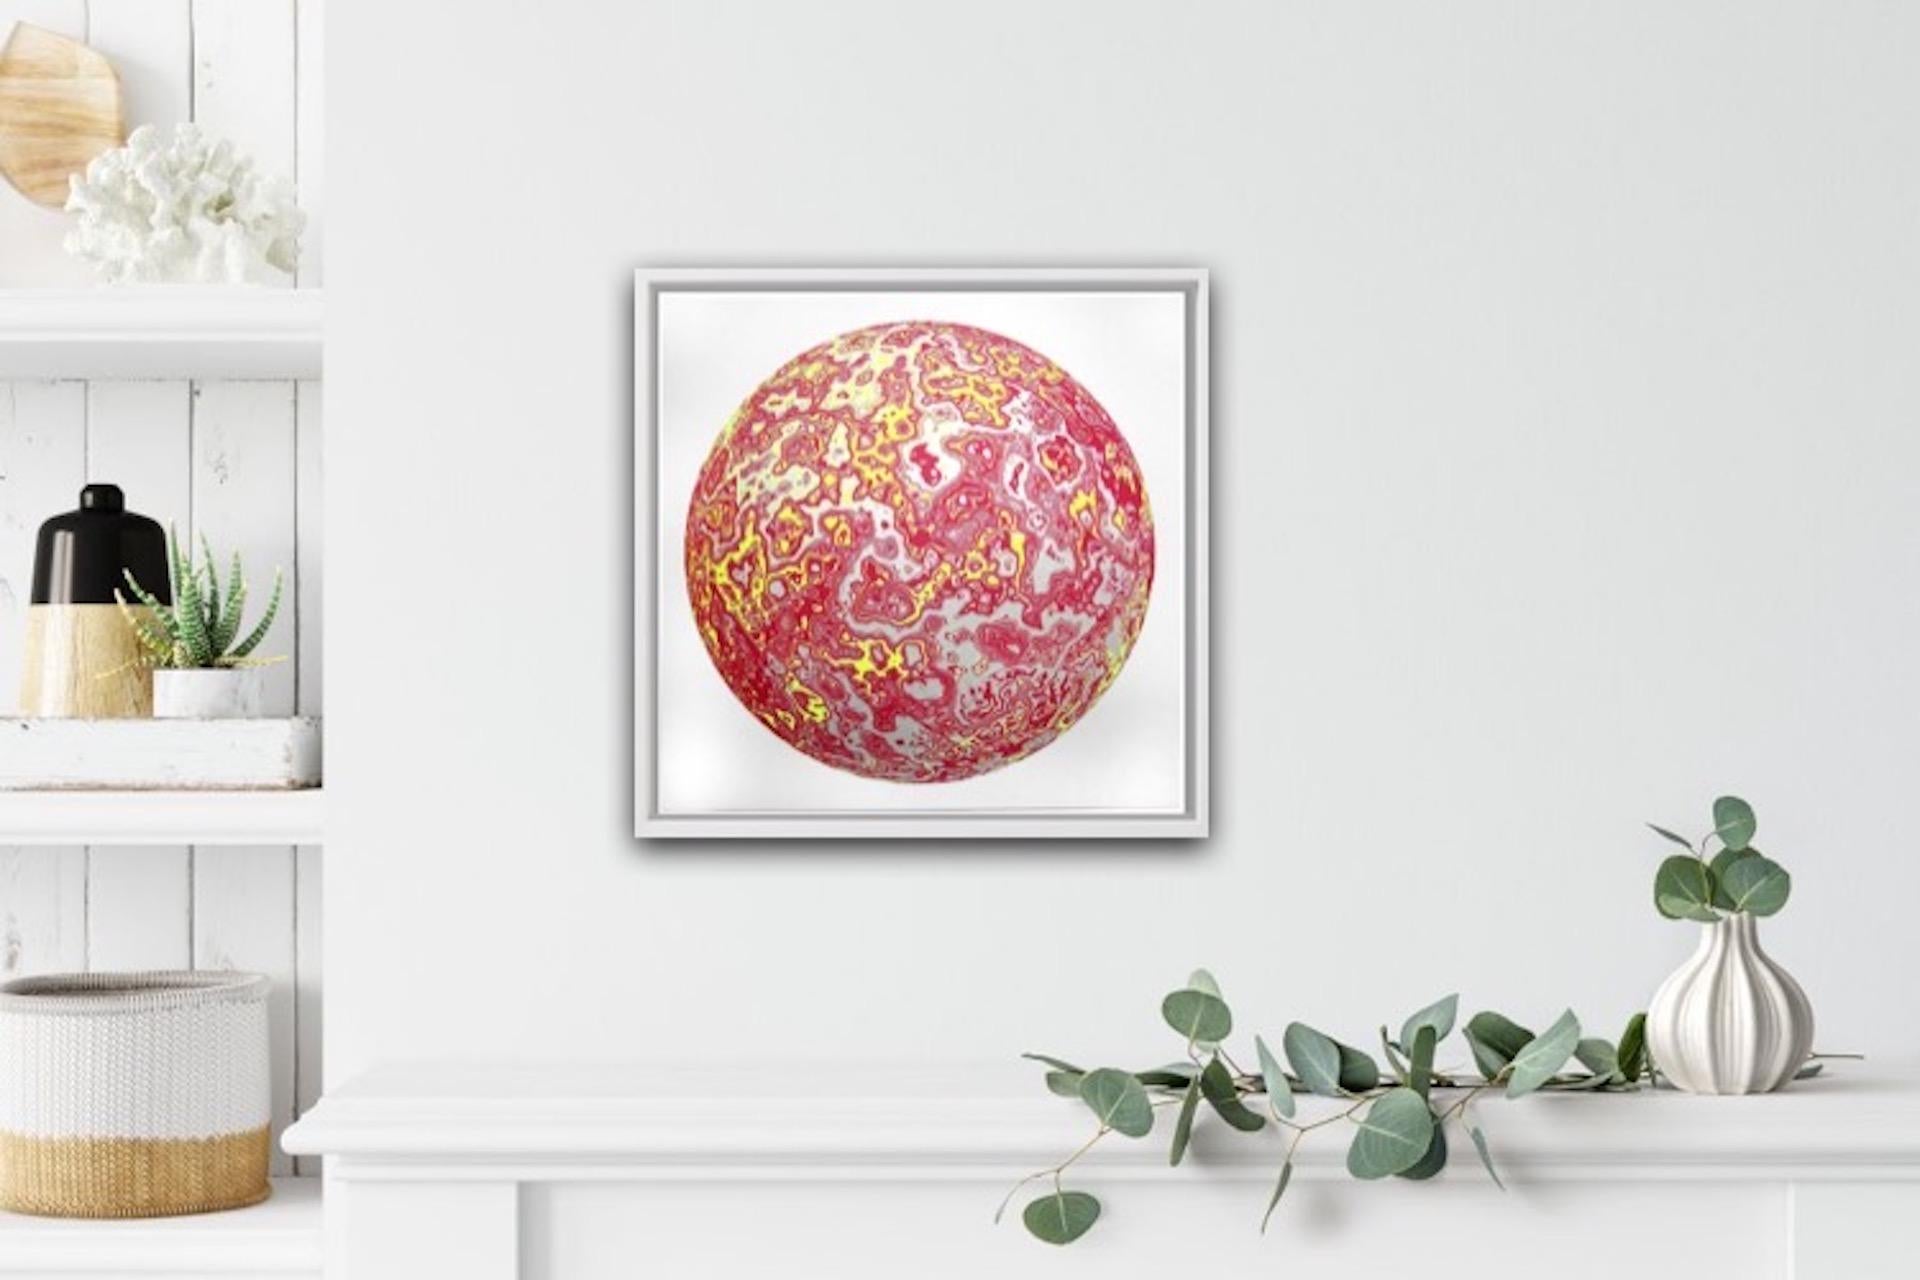 Chris Keegan, Sphere, Space Art, Geomtric Art, Bright Affordable Art - Print by Chris Keegan 